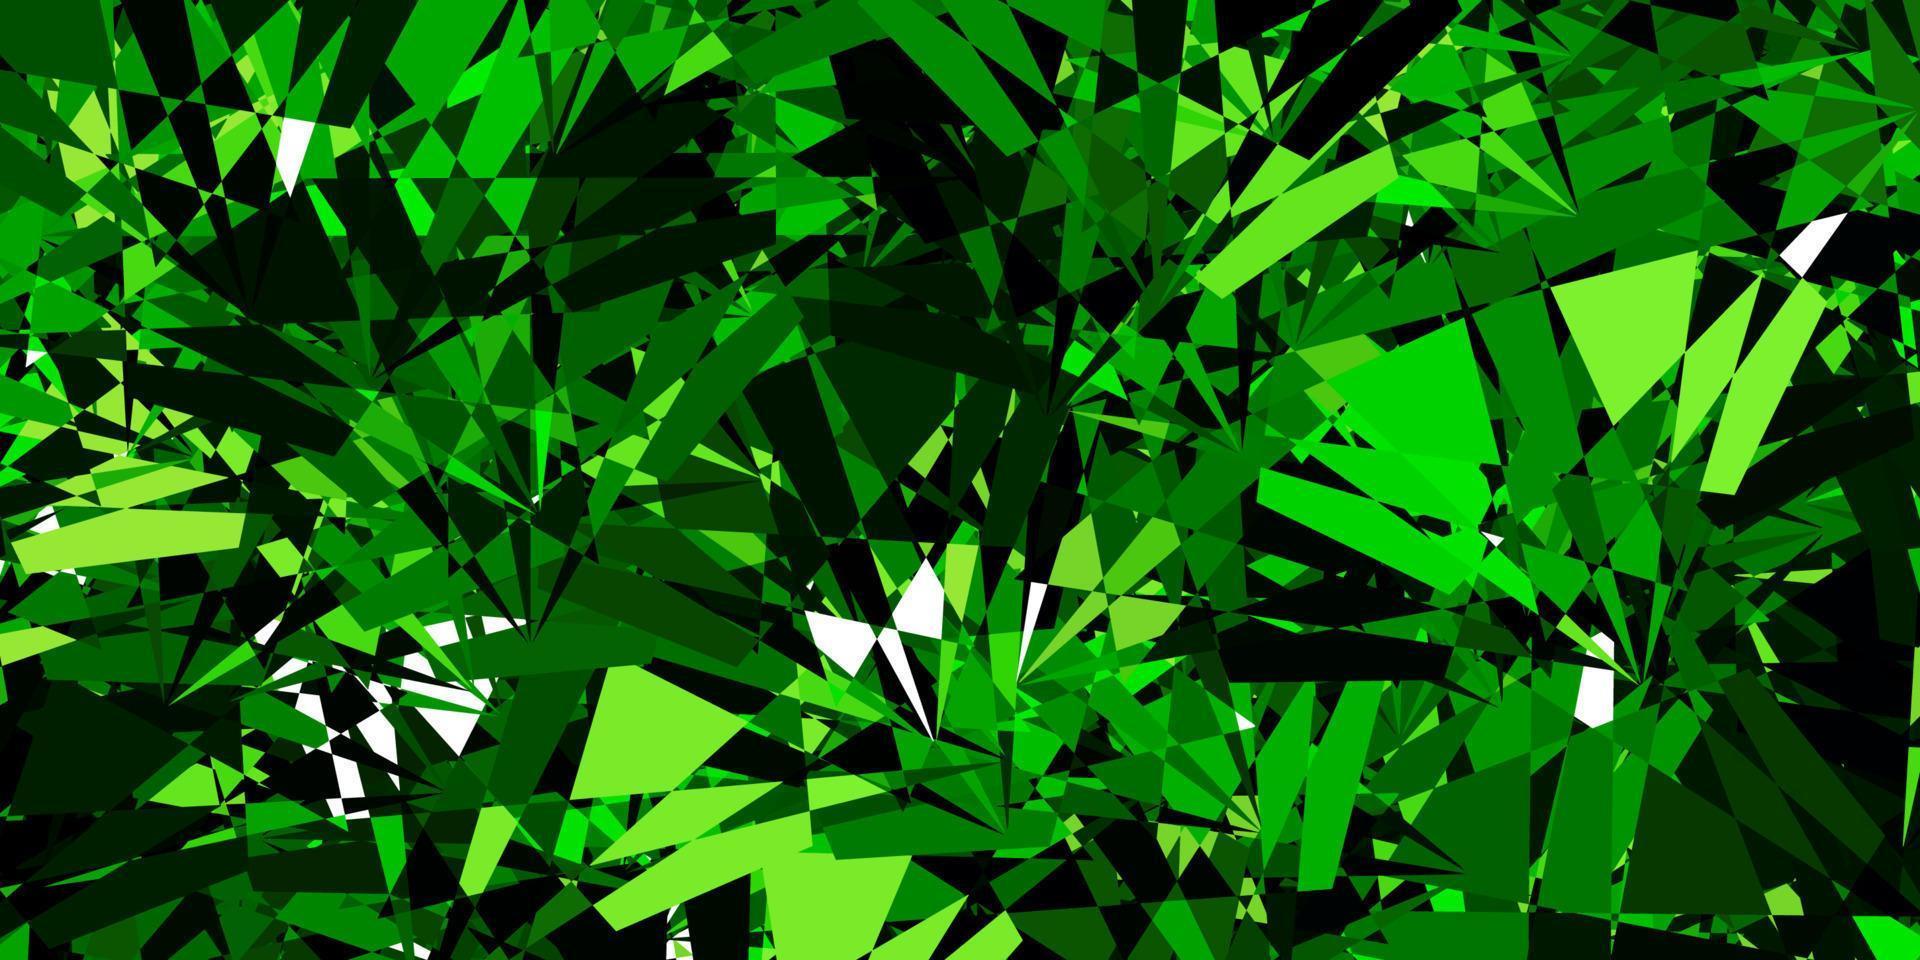 padrão de vetor verde escuro com formas poligonais.